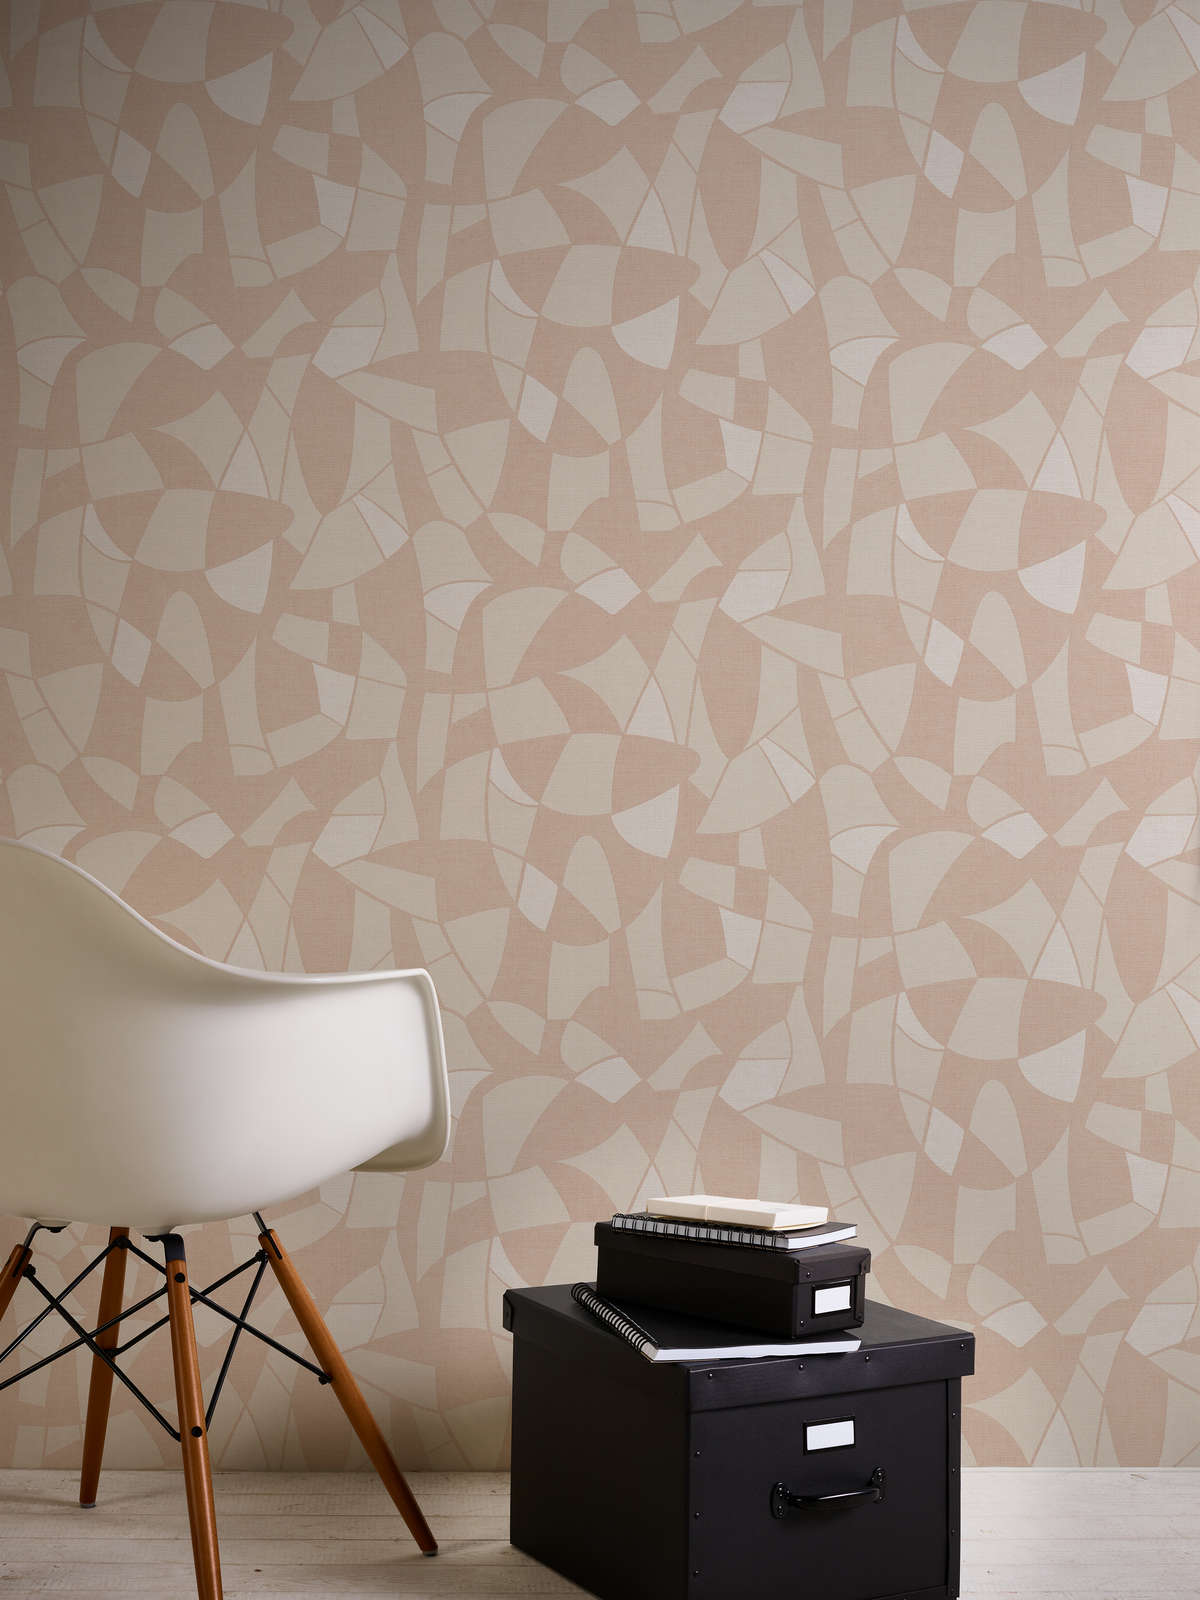             Non-woven wallpaper in geometric style - beige, cream
        